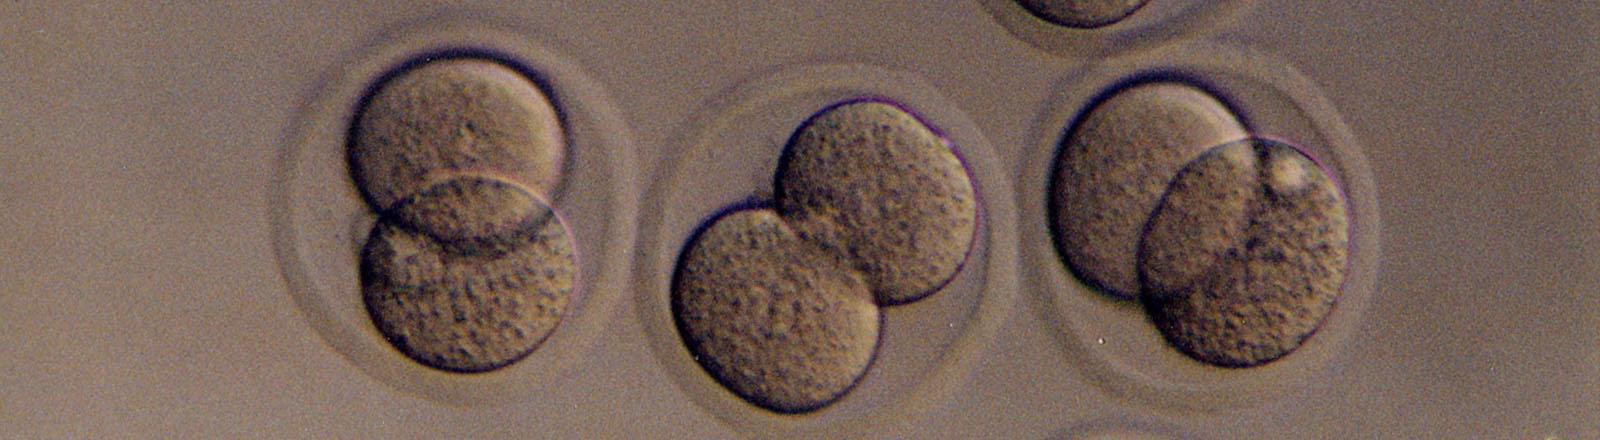 生物学 embryo image